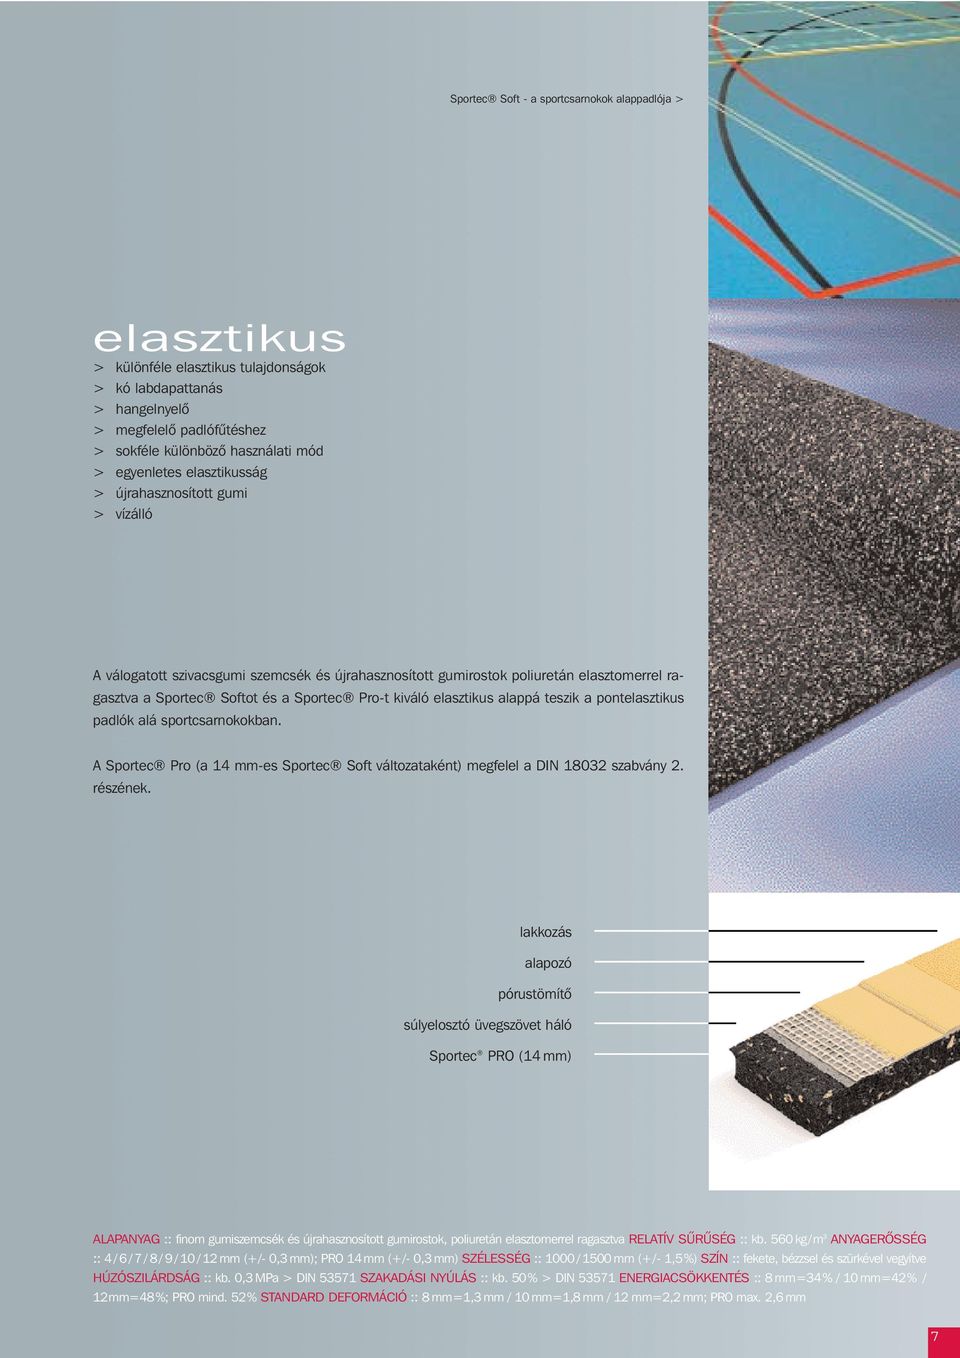 kiváló elasztikus alappá teszik a pontelasztikus padlók alá sportcsarnokokban. A Sportec Pro (a 14 mm-es Sportec Soft változataként) megfelel a DIN 18032 szabvány 2. részének.